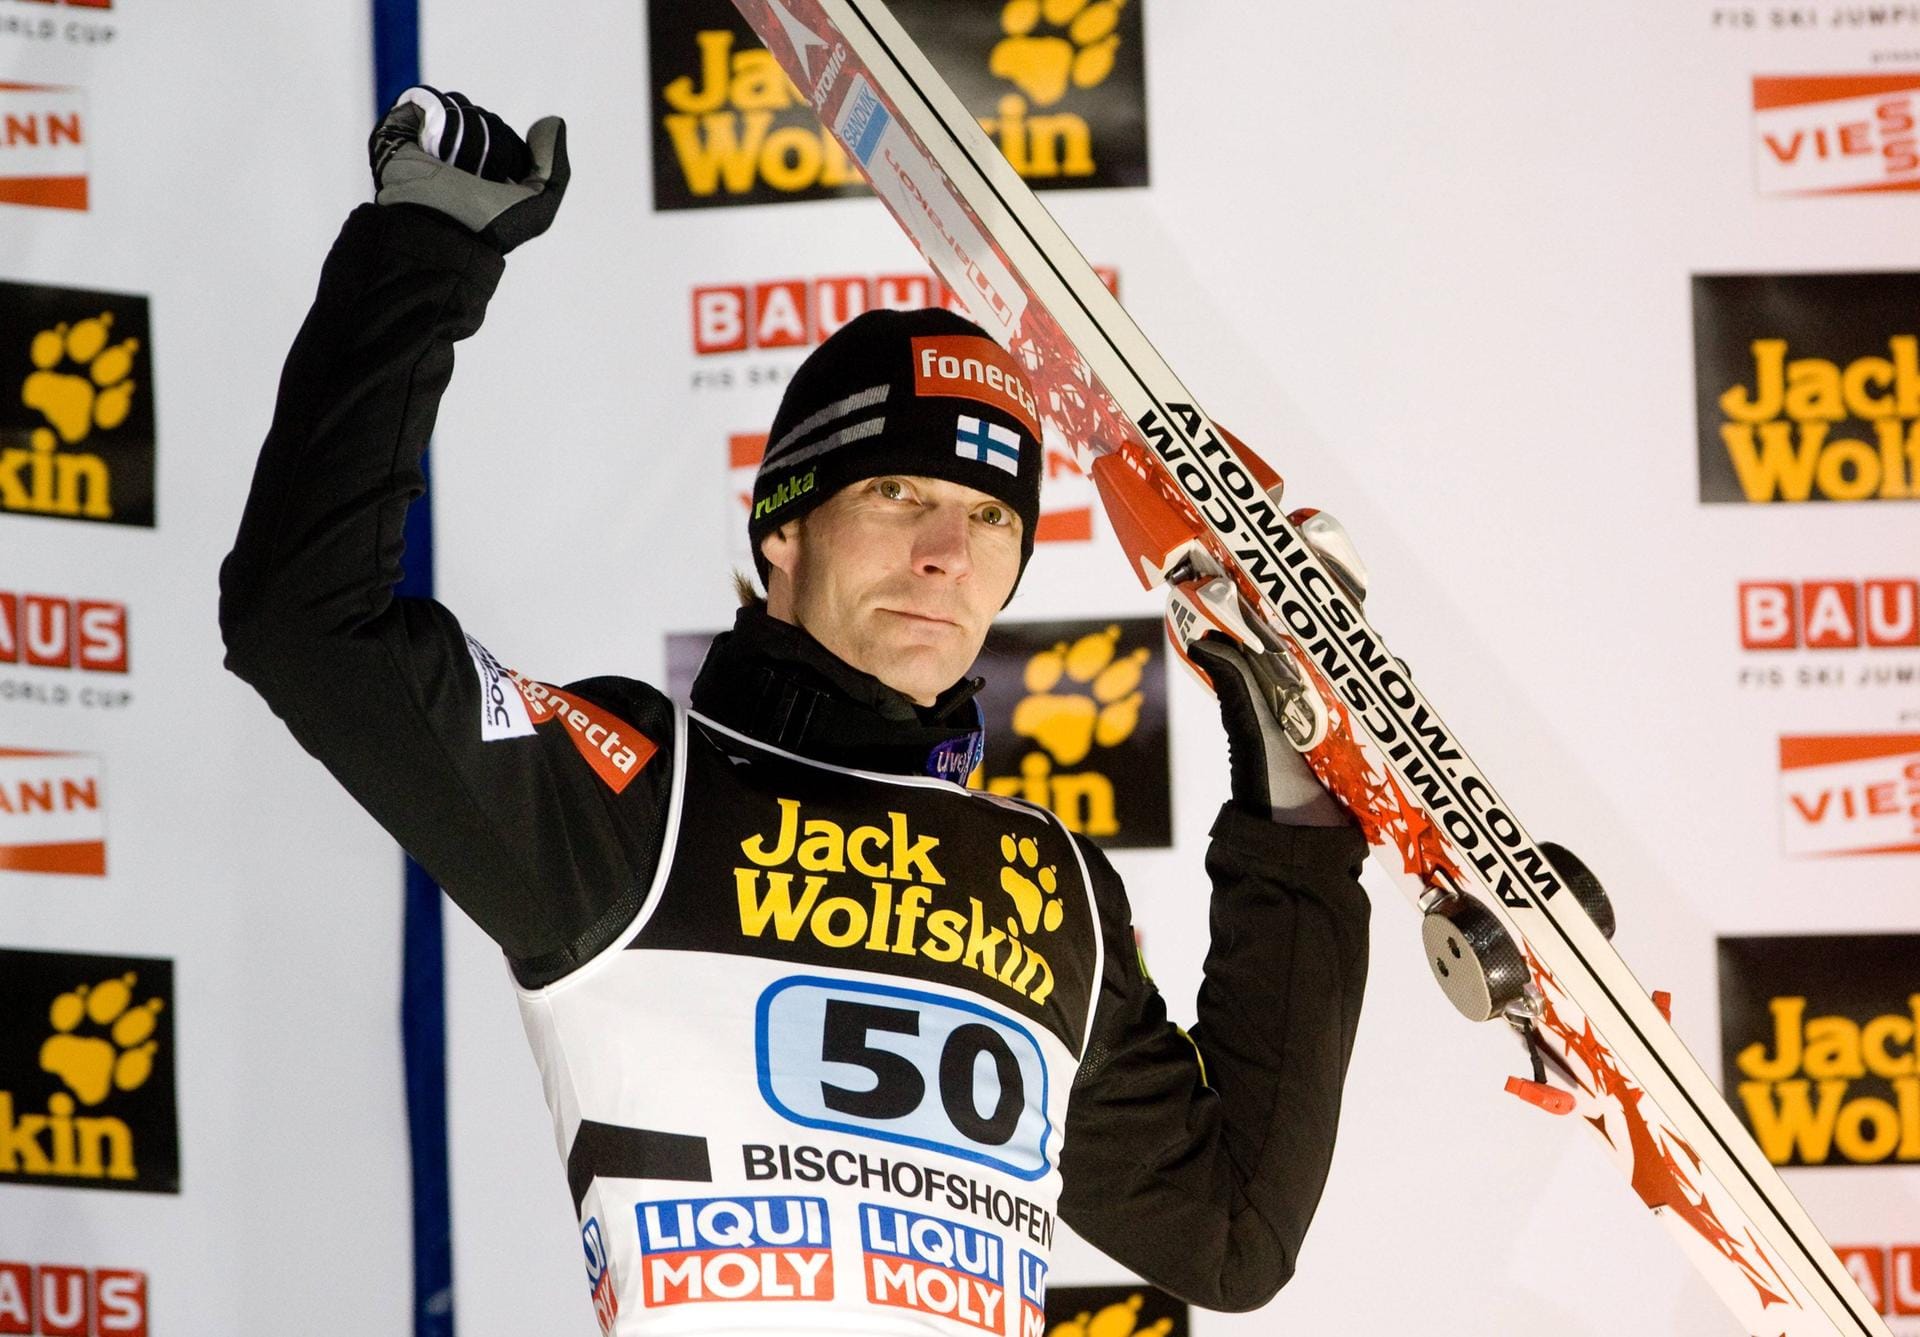 2003, 2005, 2008: Die finnische Ikone Janne Ahonen hat die Tournee dreimal alleinig für sich entschieden. Ahonen gilt als einer der größten Springer seiner Generation. Er ist jedoch nicht nur ehemaliger Skispringer, sondern auch Motorsportler.